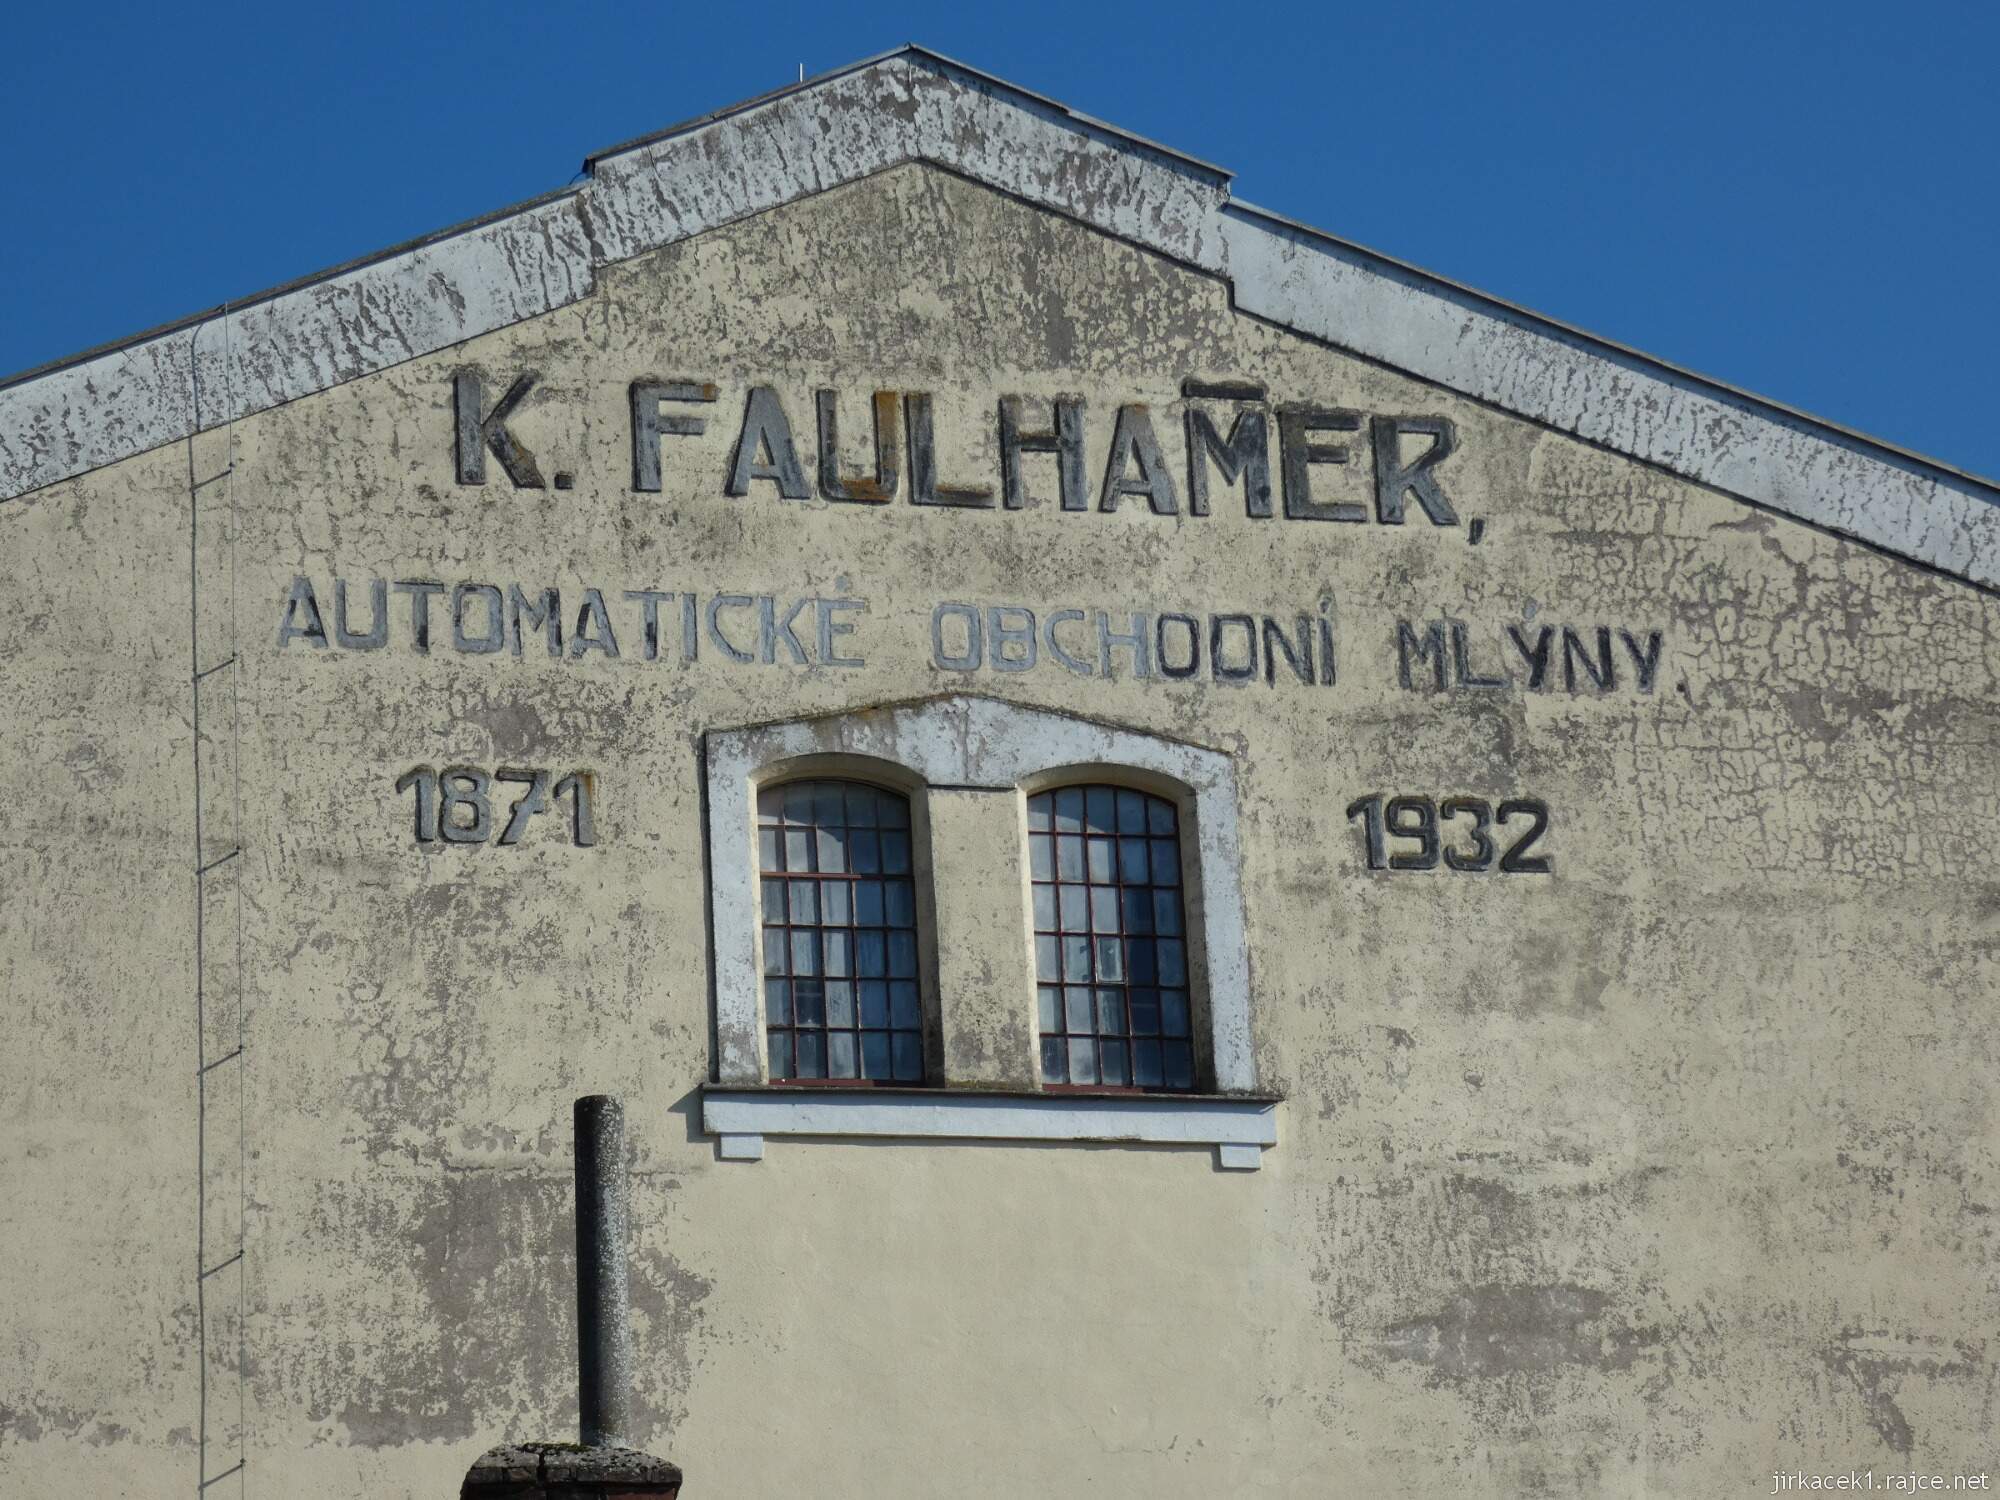 Tržek - Faulhammerův mlýn